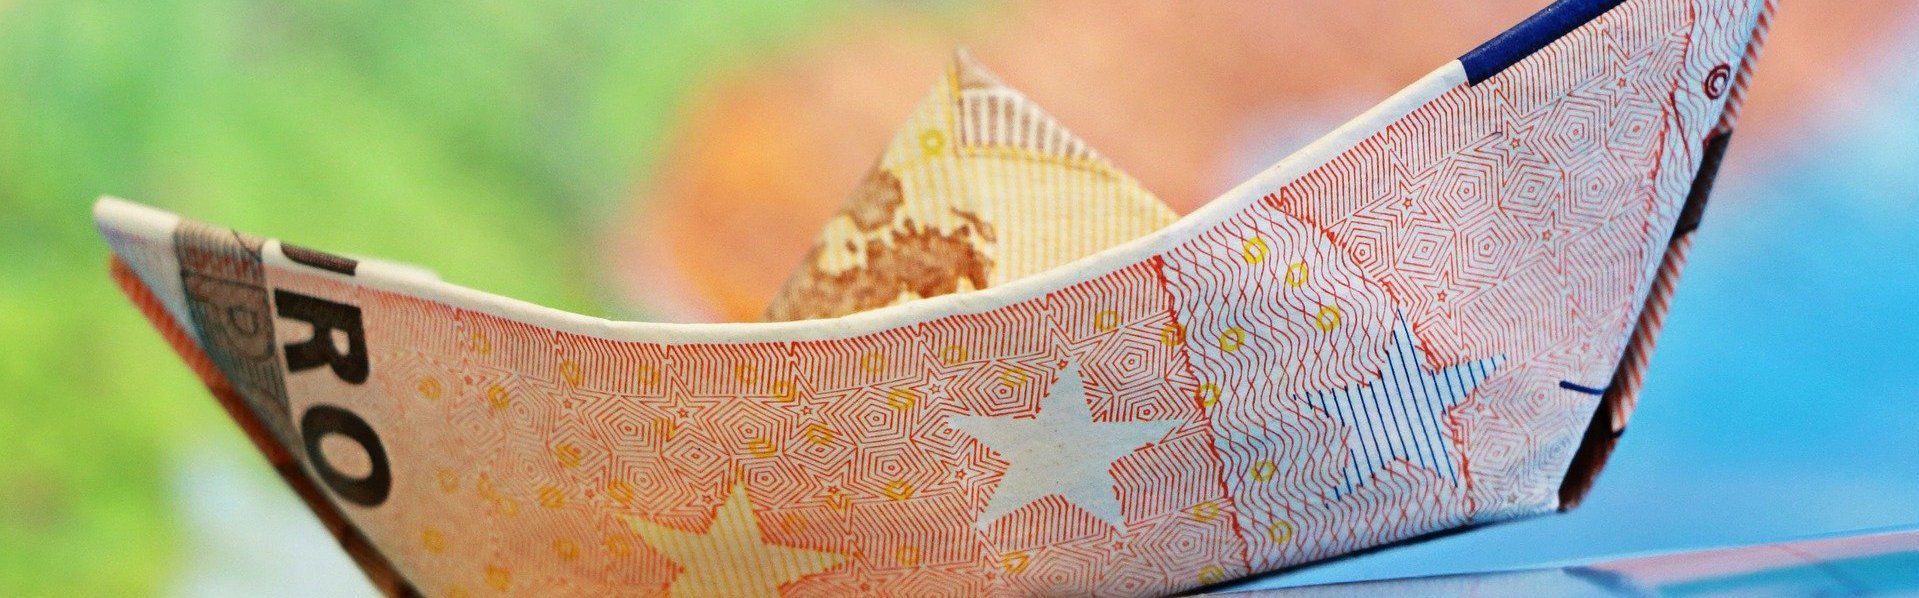 Das Bild zeigt ein aus einem Geldschein gebasteltes Schiff vor einem bunten Hintergrund.